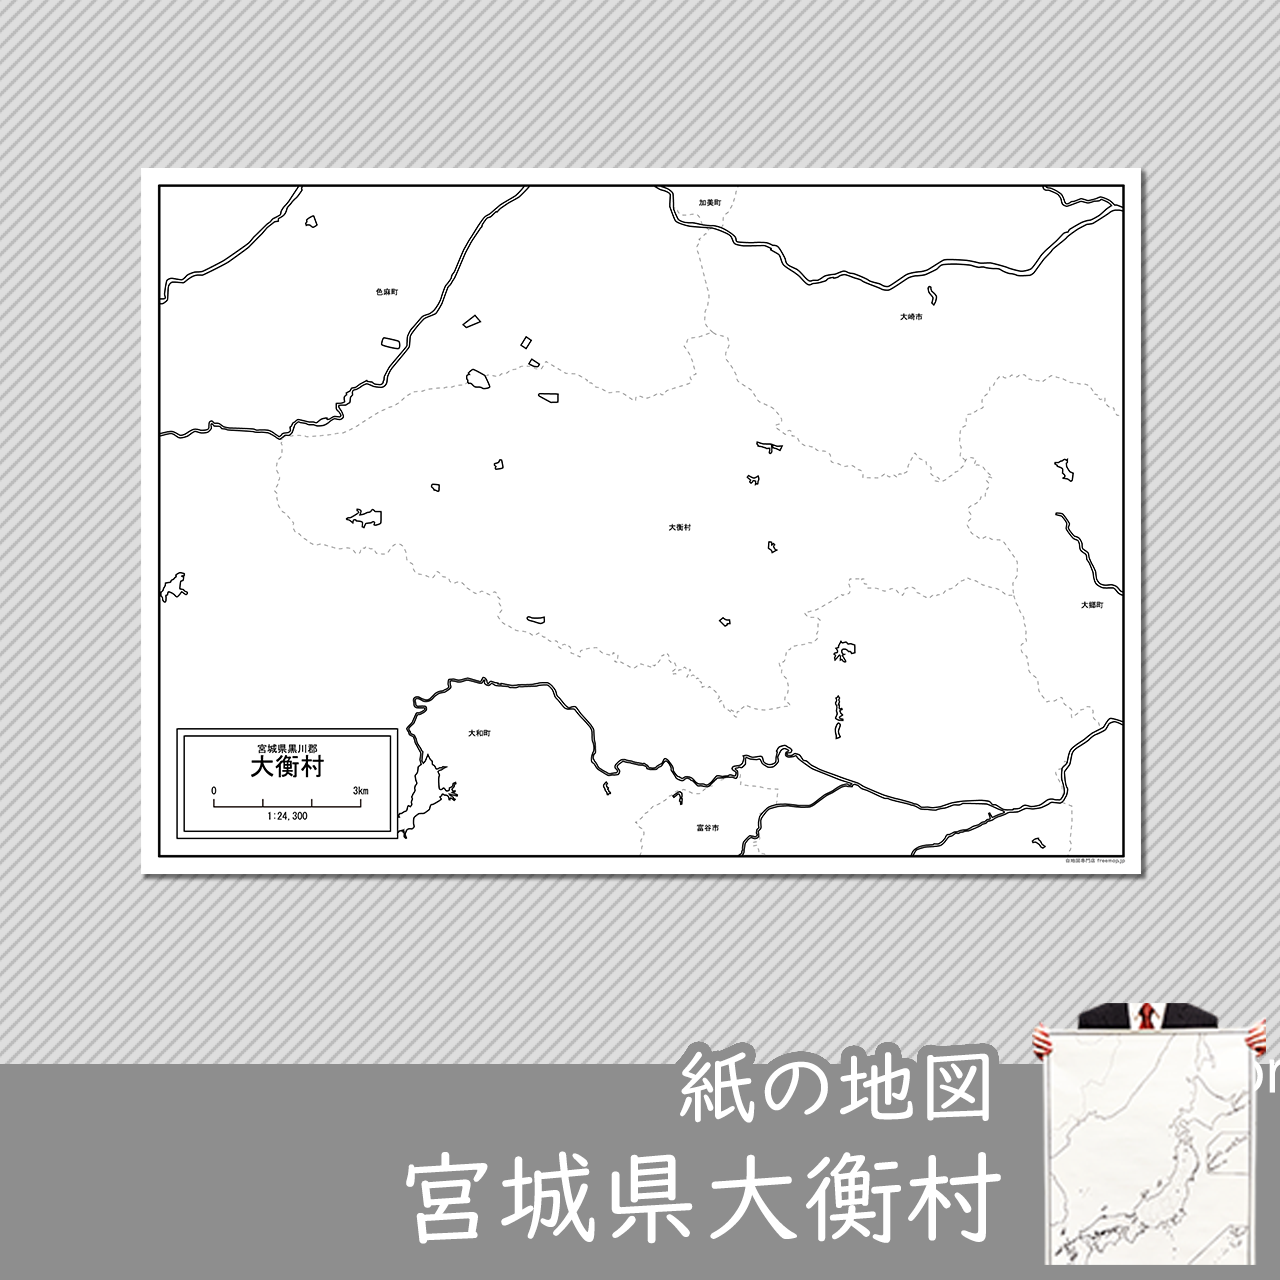 大衡村の紙の白地図のサムネイル